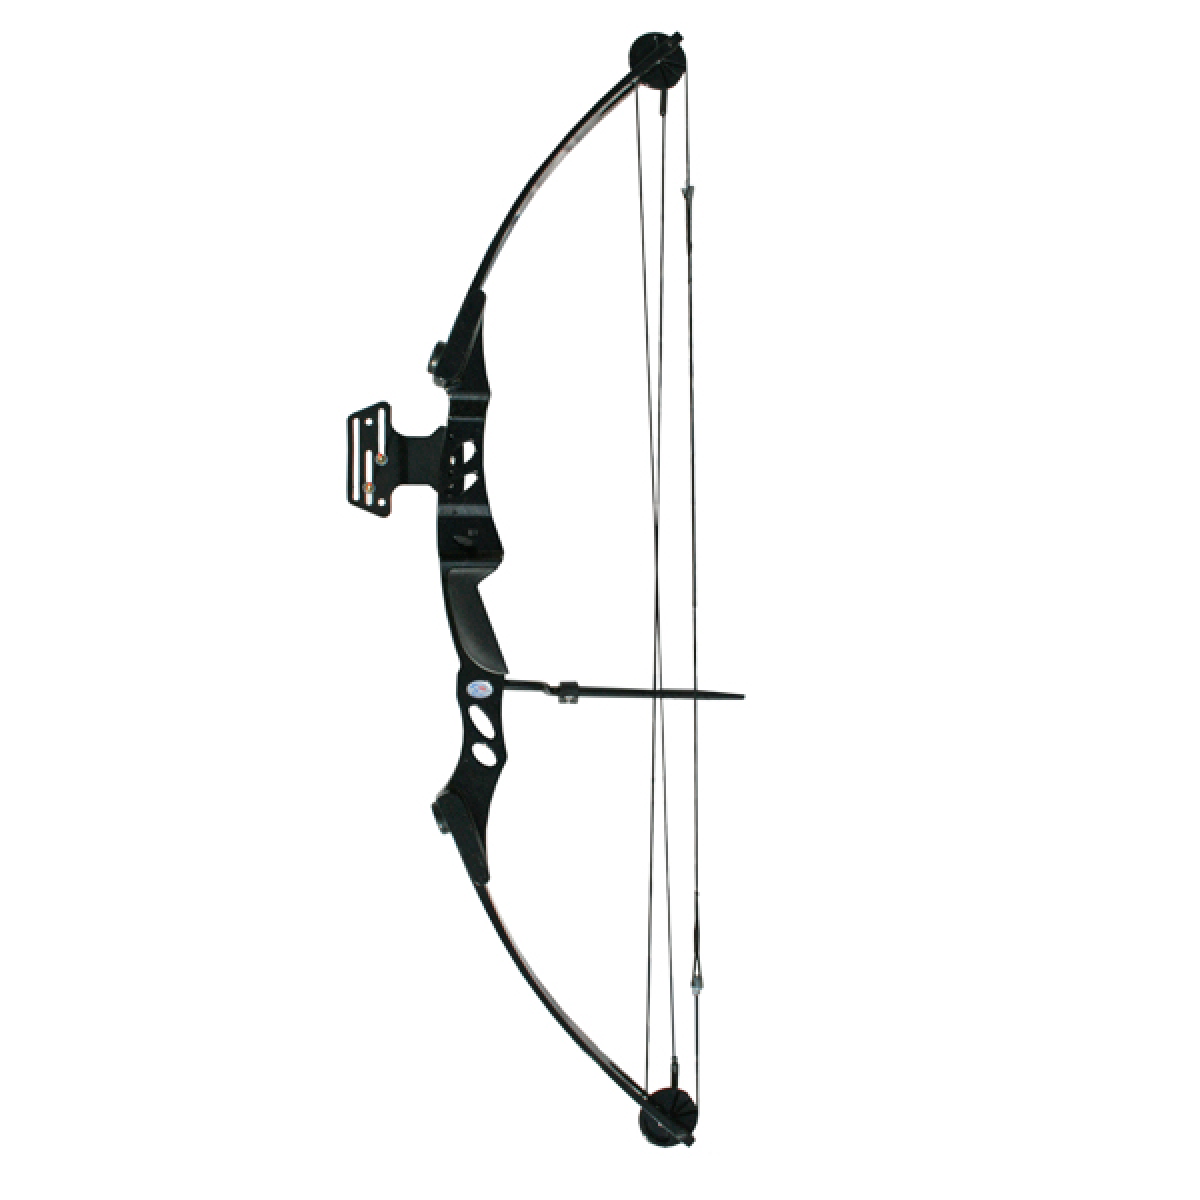 Archery 55Lb Black Compound Bow - Archery, Transparent background PNG HD thumbnail